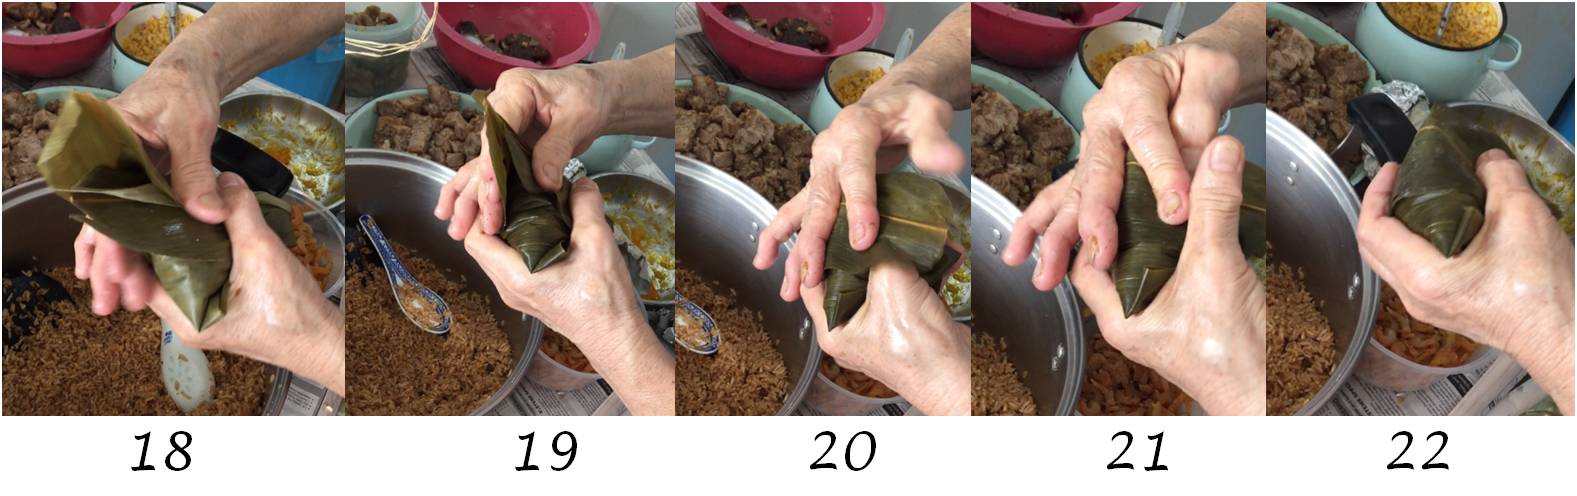 making rice dumpling